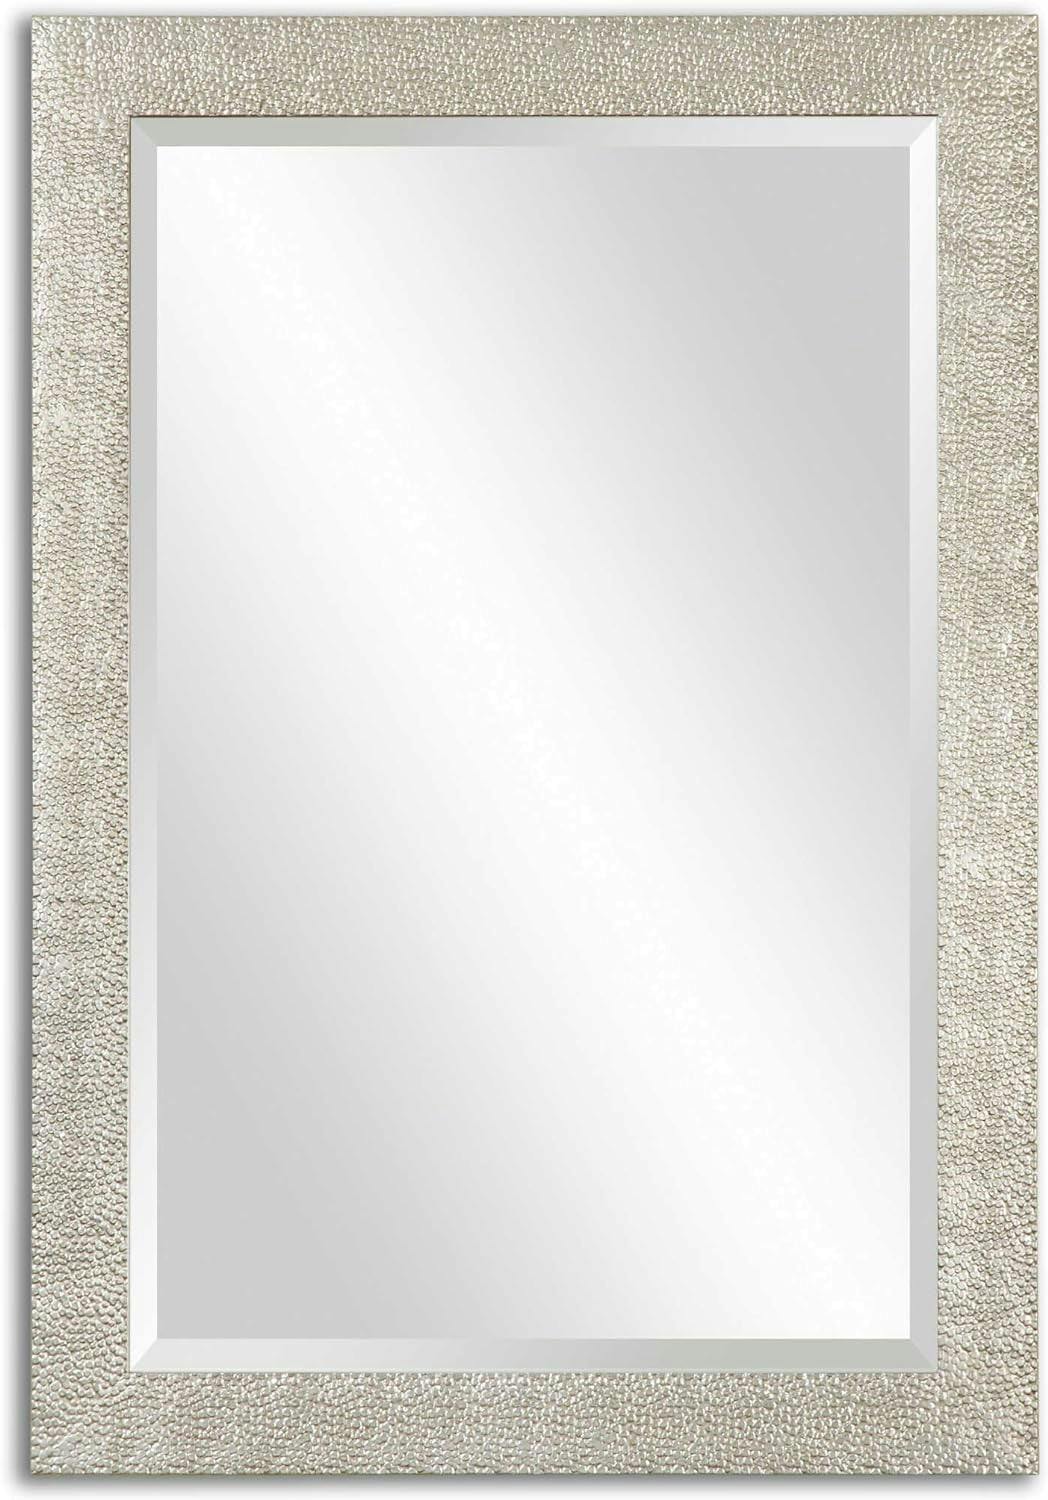 Contemporary Rectangular Silver Mirror 29" x 41"